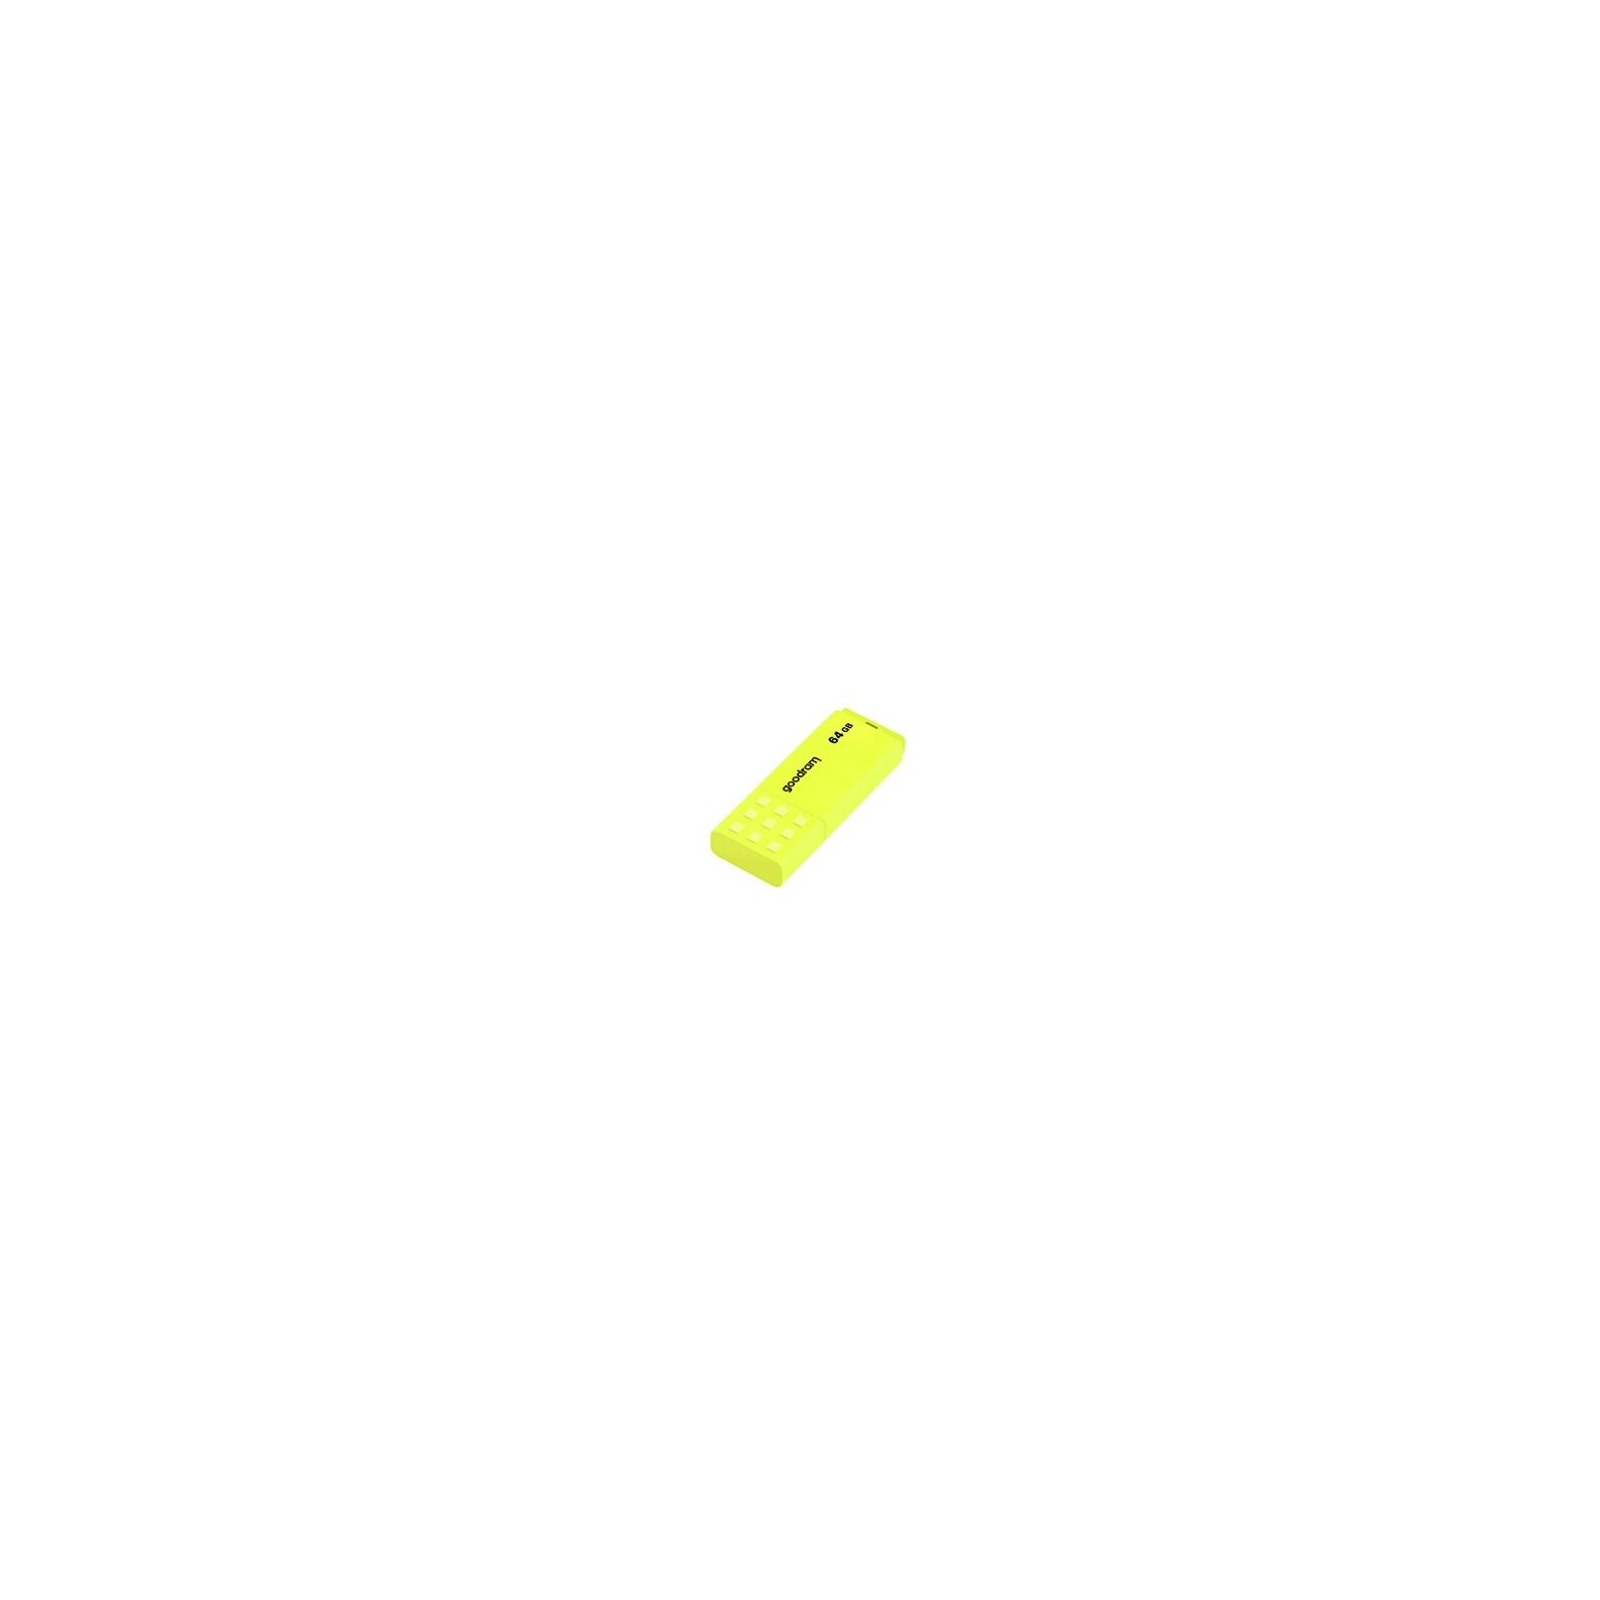 USB флеш накопичувач Goodram 16GB UME2 Yellow USB 2.0 (UME2-0160Y0R11)